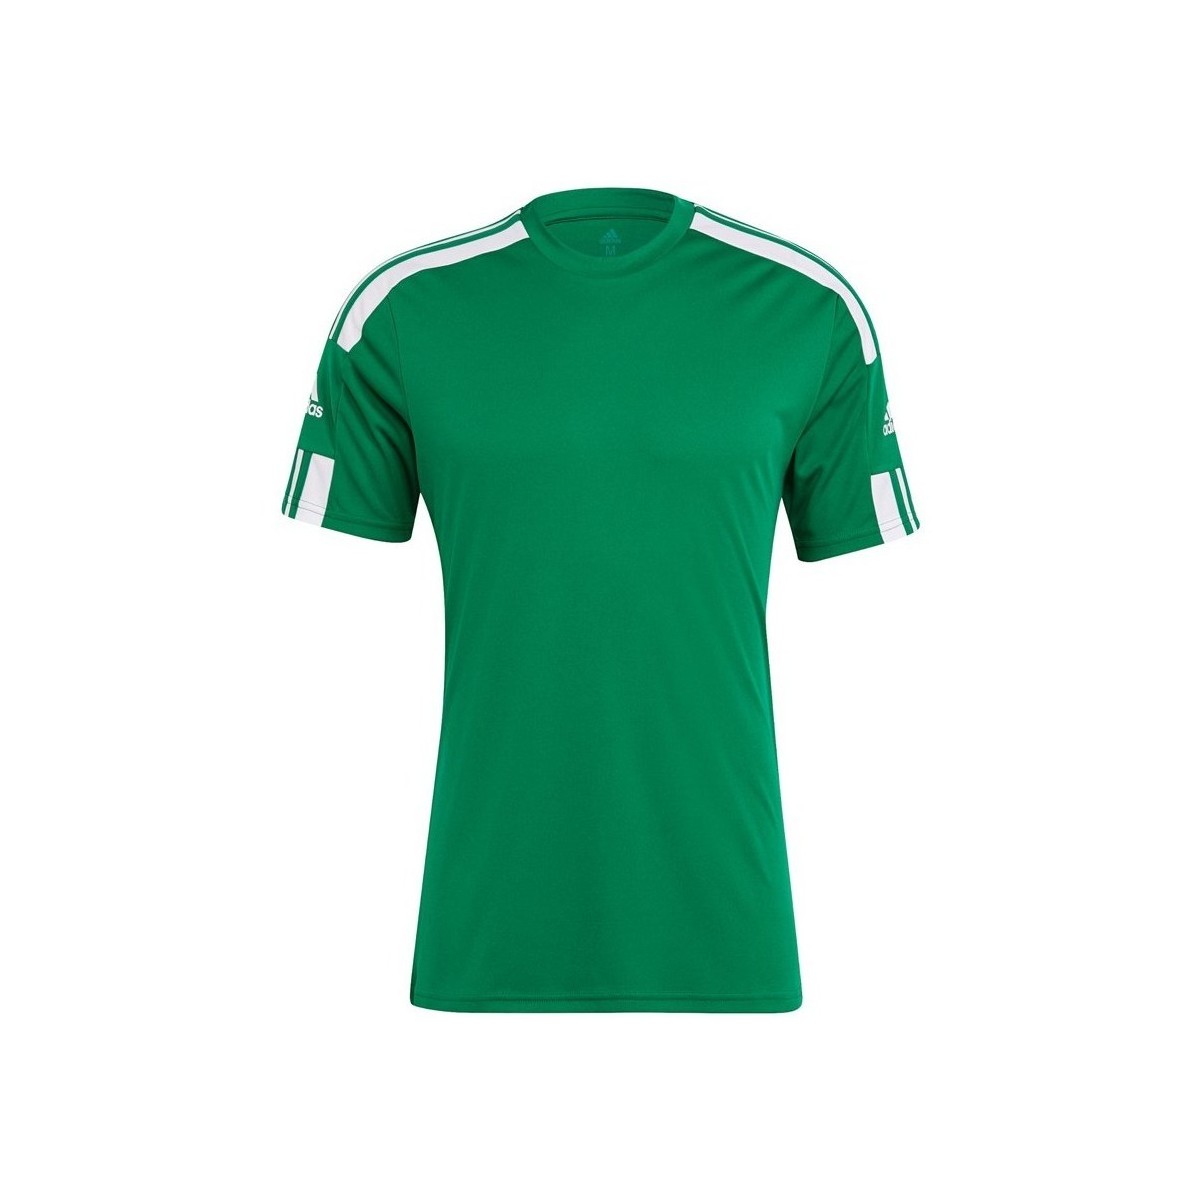 Vêtements Homme T-shirts manches courtes adidas Originals Squadra 21 Vert